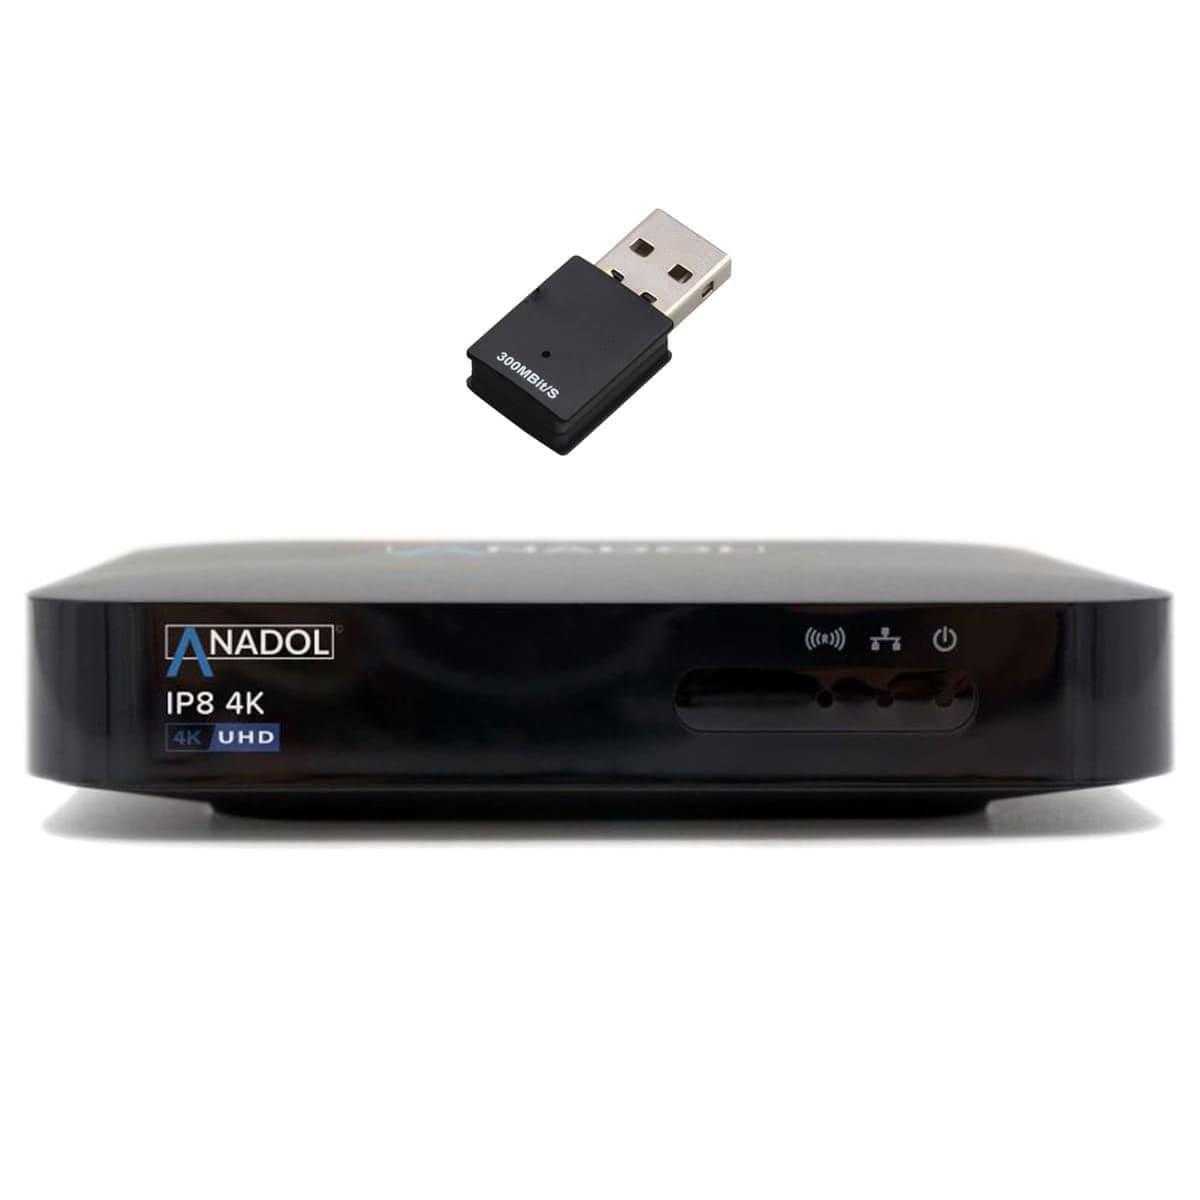 Anadol IP8 4K UHD IP-Receiver mit 300 MBit/s WLAN Stick (Linux E2 + Define OS Mediaplayer schwarz) von Anadol